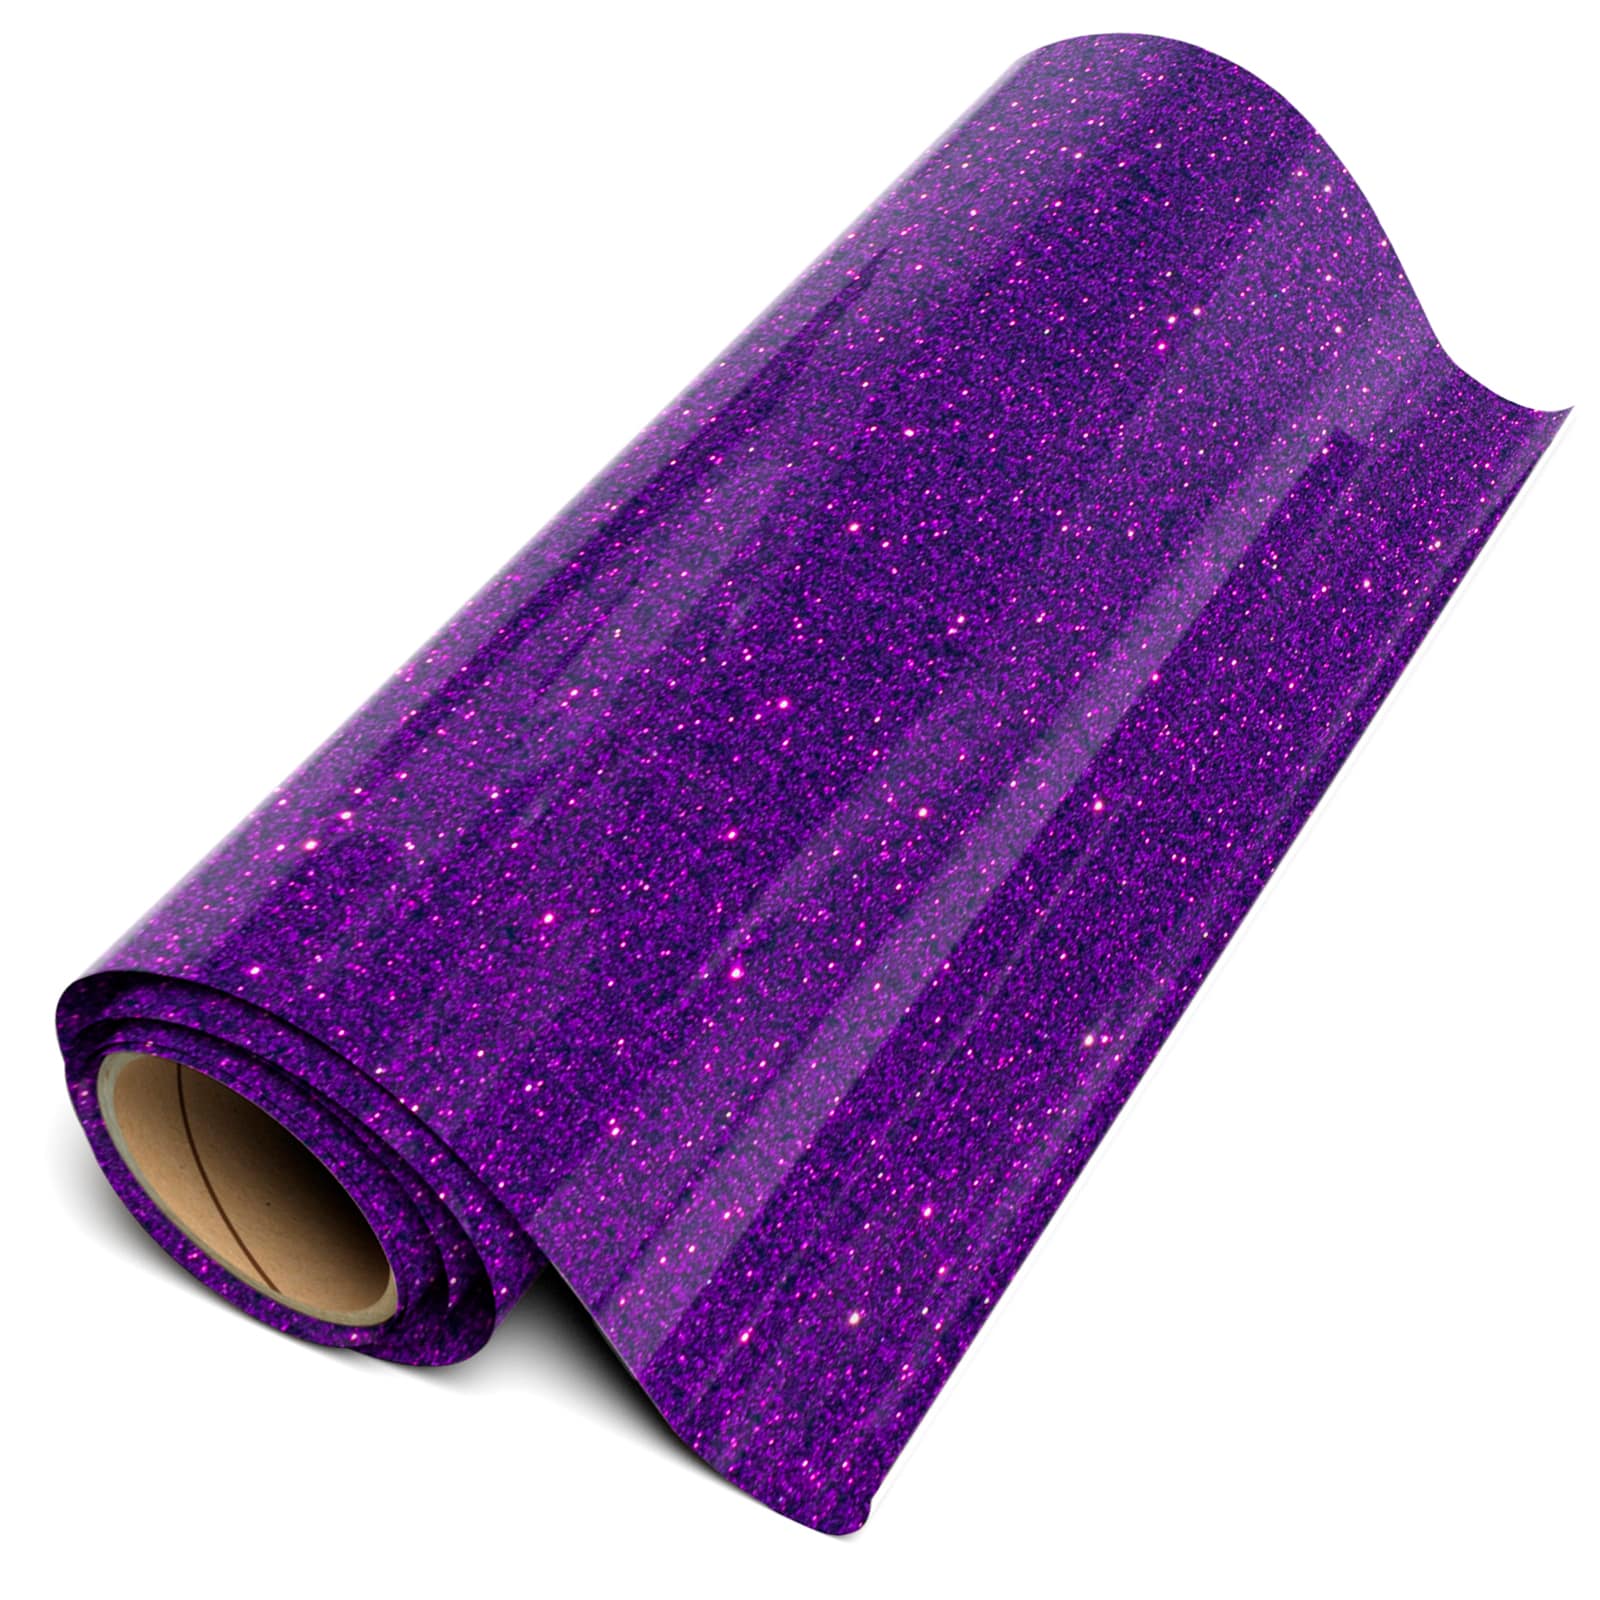 Glitter Purple Siser HTV